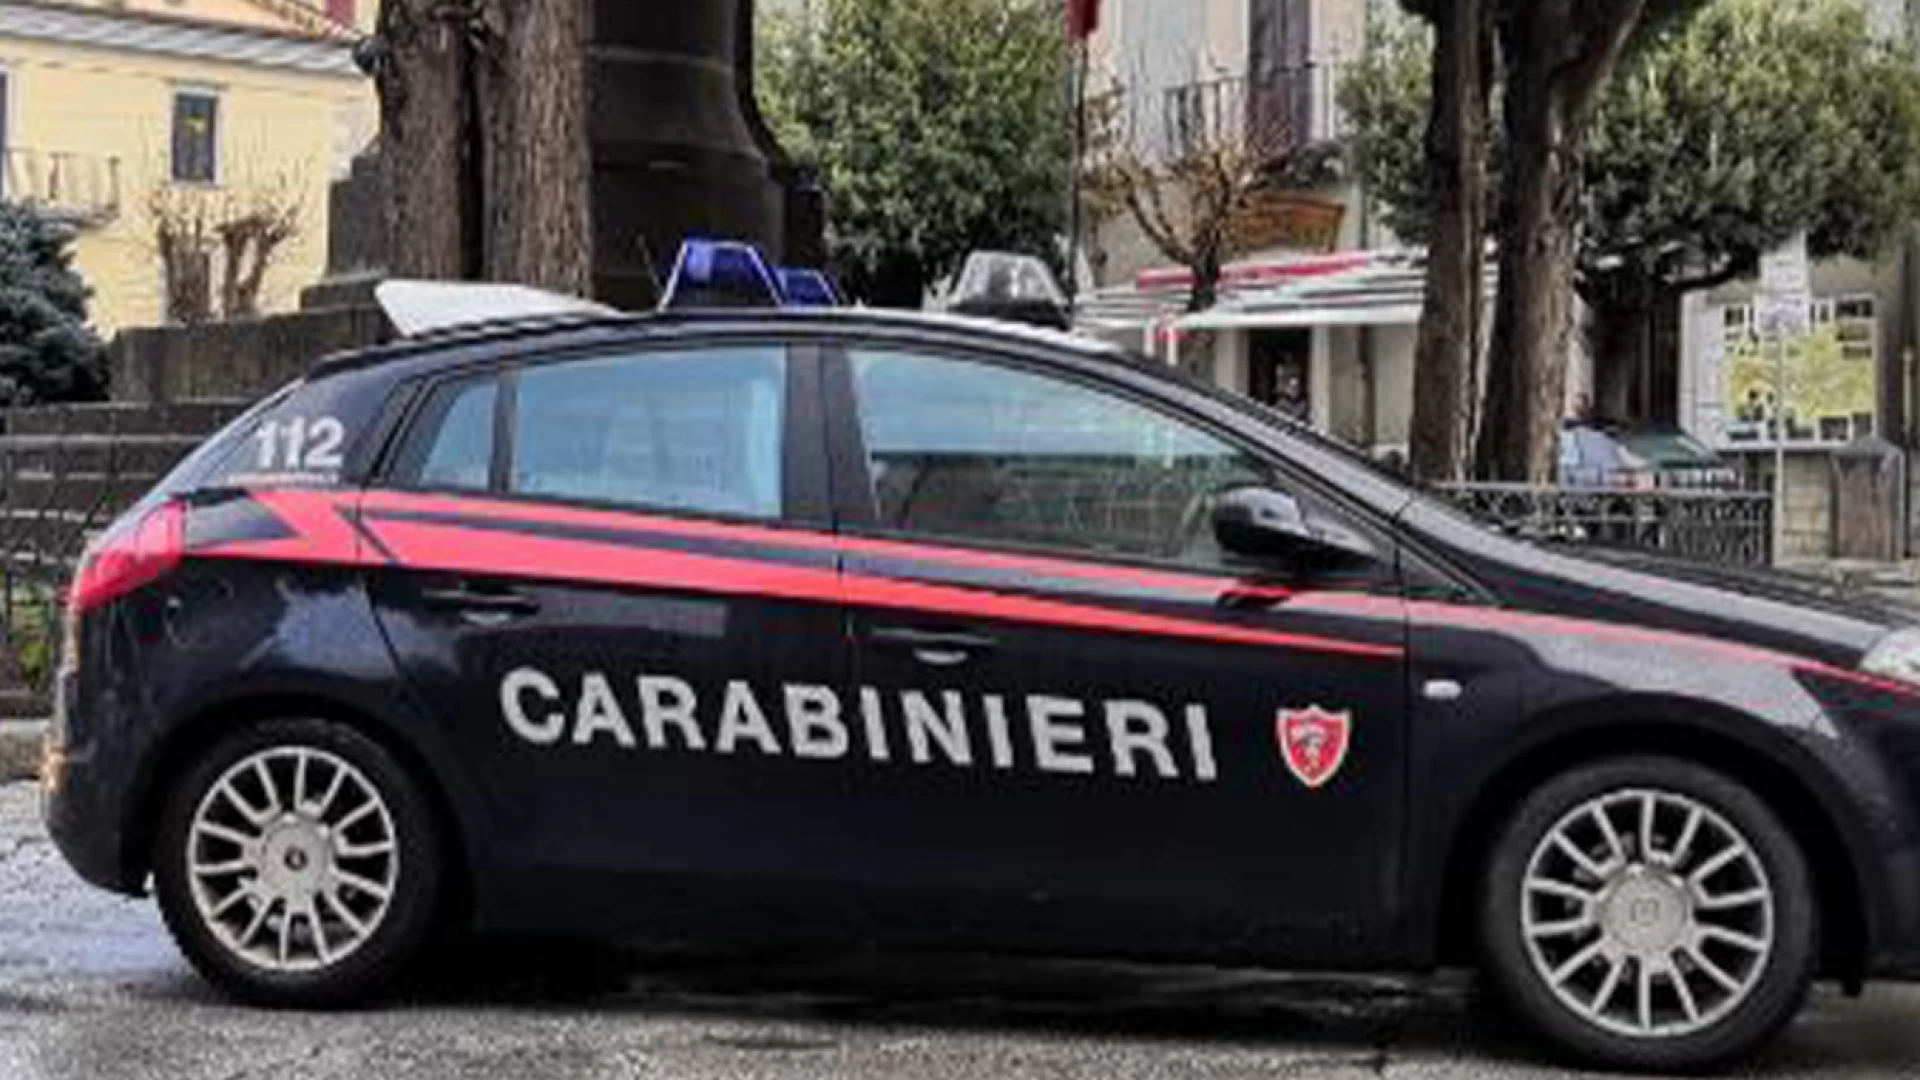 Pubblicava falsi annunci di vendita in rete, arrestata cittadina italiana dai Carabinieri di Tagliacozzo nella Marsica.